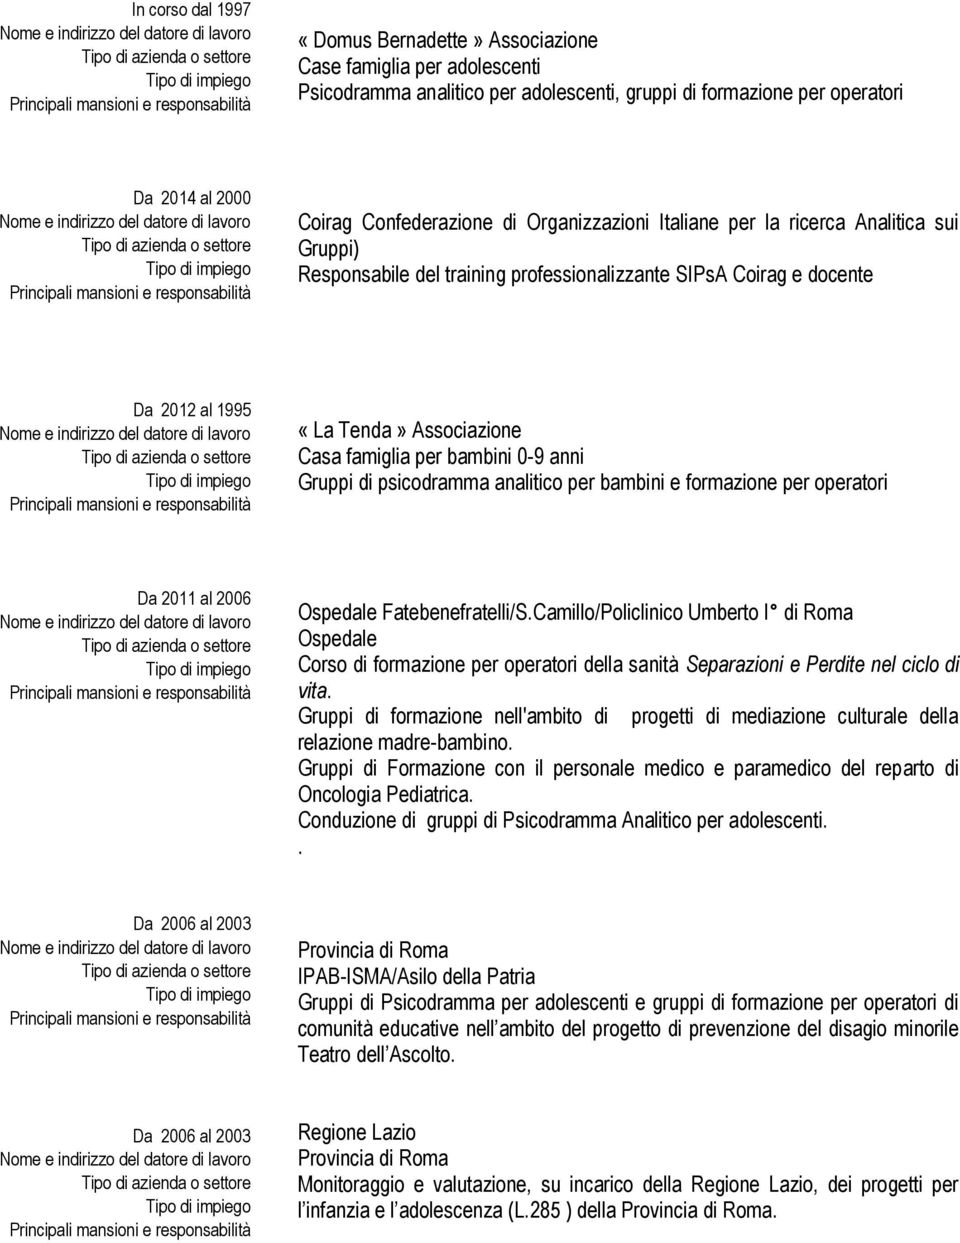 anni Gruppi di psicodramma analitico per bambini e formazione per operatori Da 2011 al 2006 Ospedale Fatebenefratelli/S.